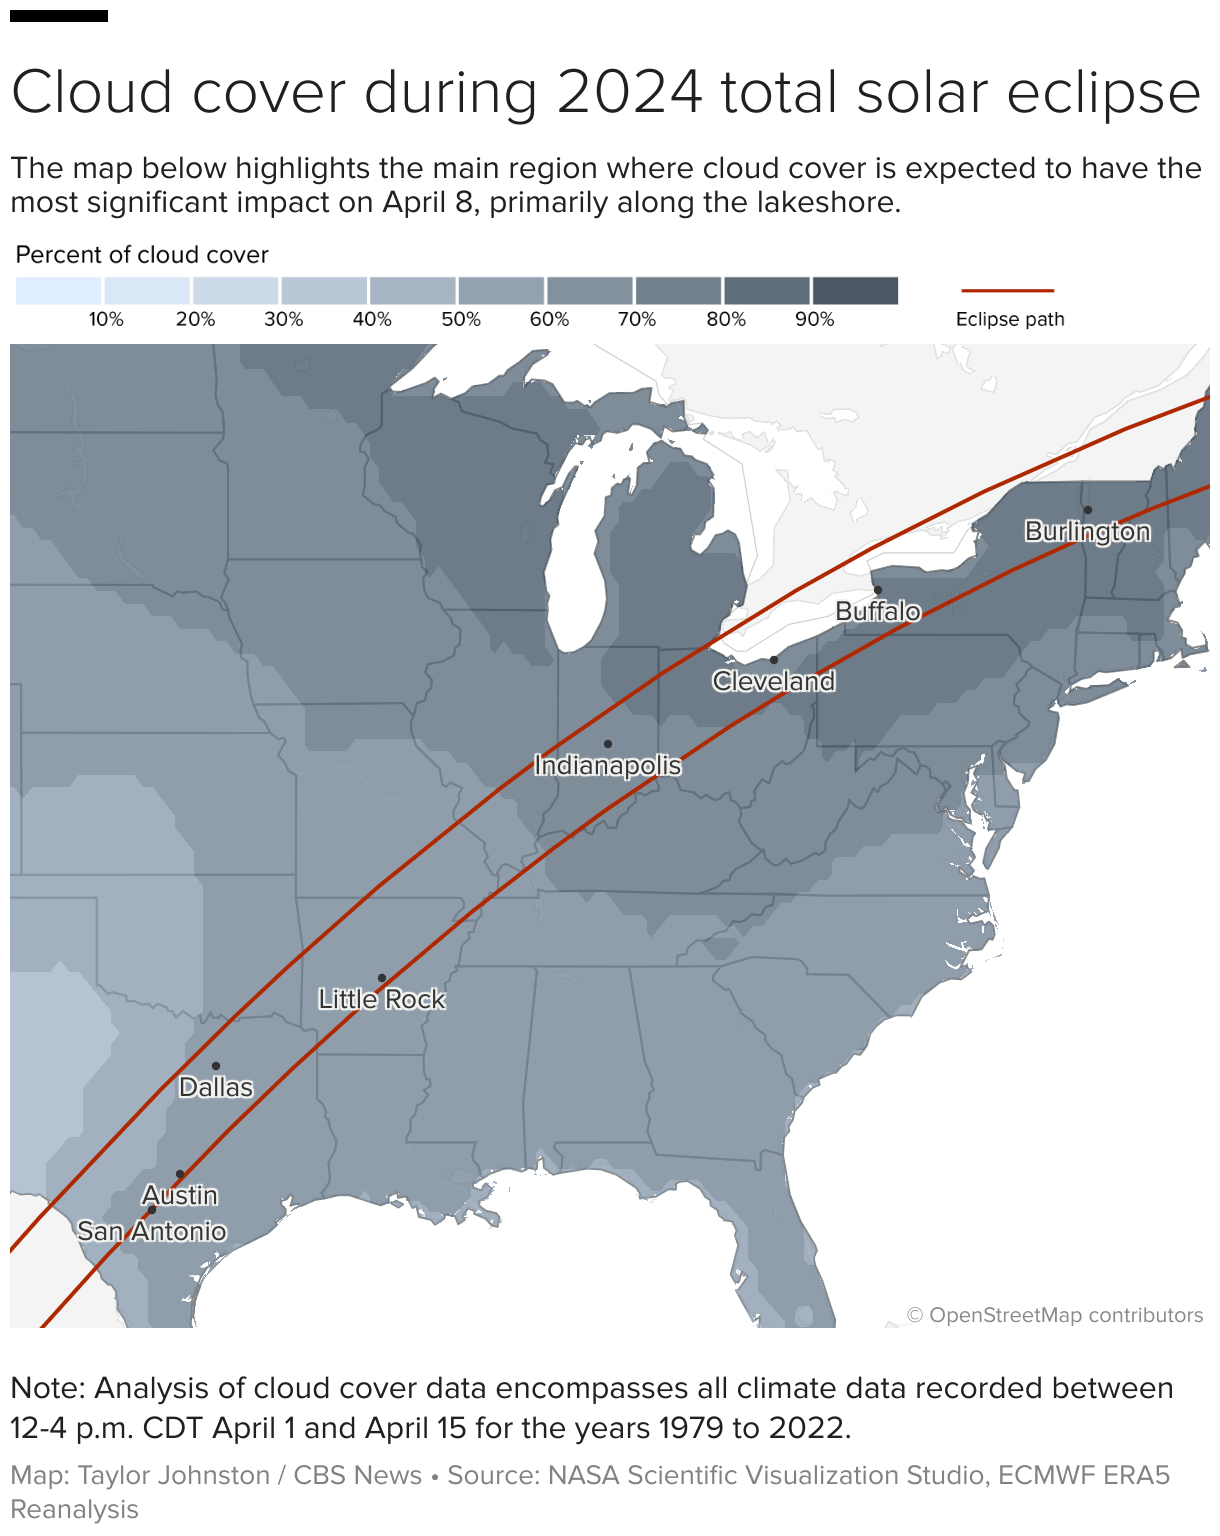 ریاستہائے متحدہ کا نقشہ 8 اپریل کو چاند گرہن کے راستے کے مختلف علاقوں میں بادل کے احاطہ کا فیصد دکھا رہا ہے۔ جھیل کے کنارے کا علاقہ بنیادی طور پر متاثر ہوگا۔ 